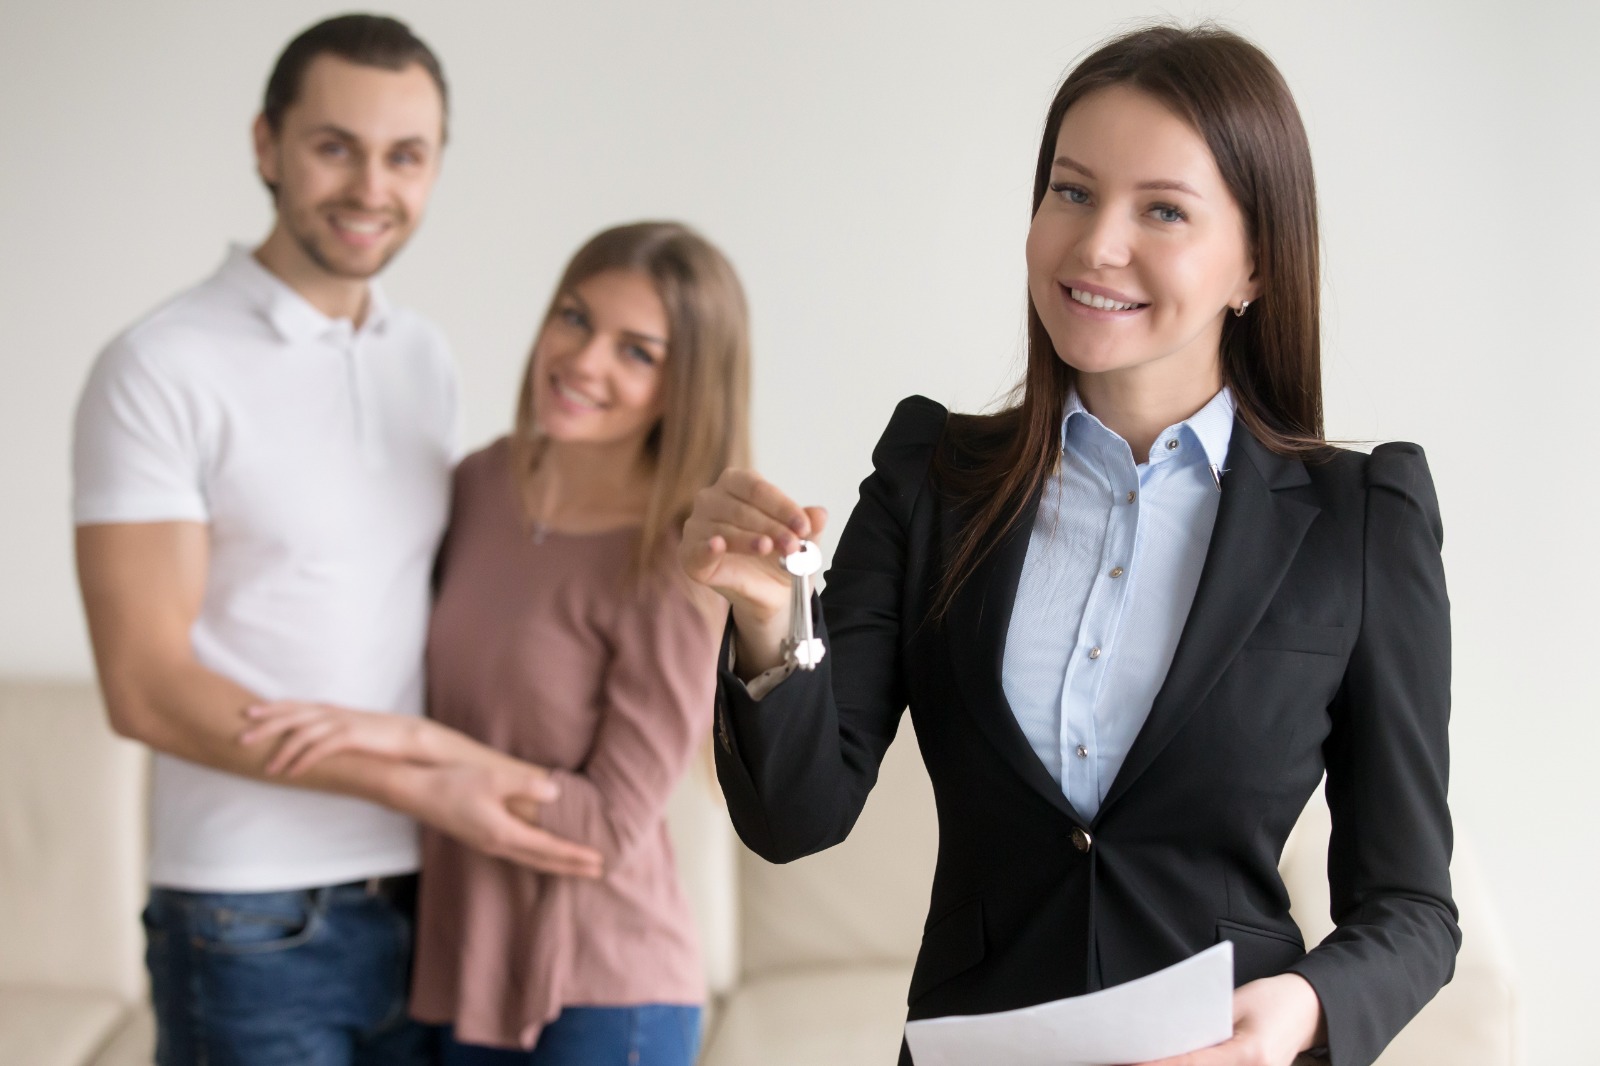 Corretor de imóveis, sob as categorias do CRECI, entregando chaves a um casal, representando uma transação imobiliária bem-sucedida.